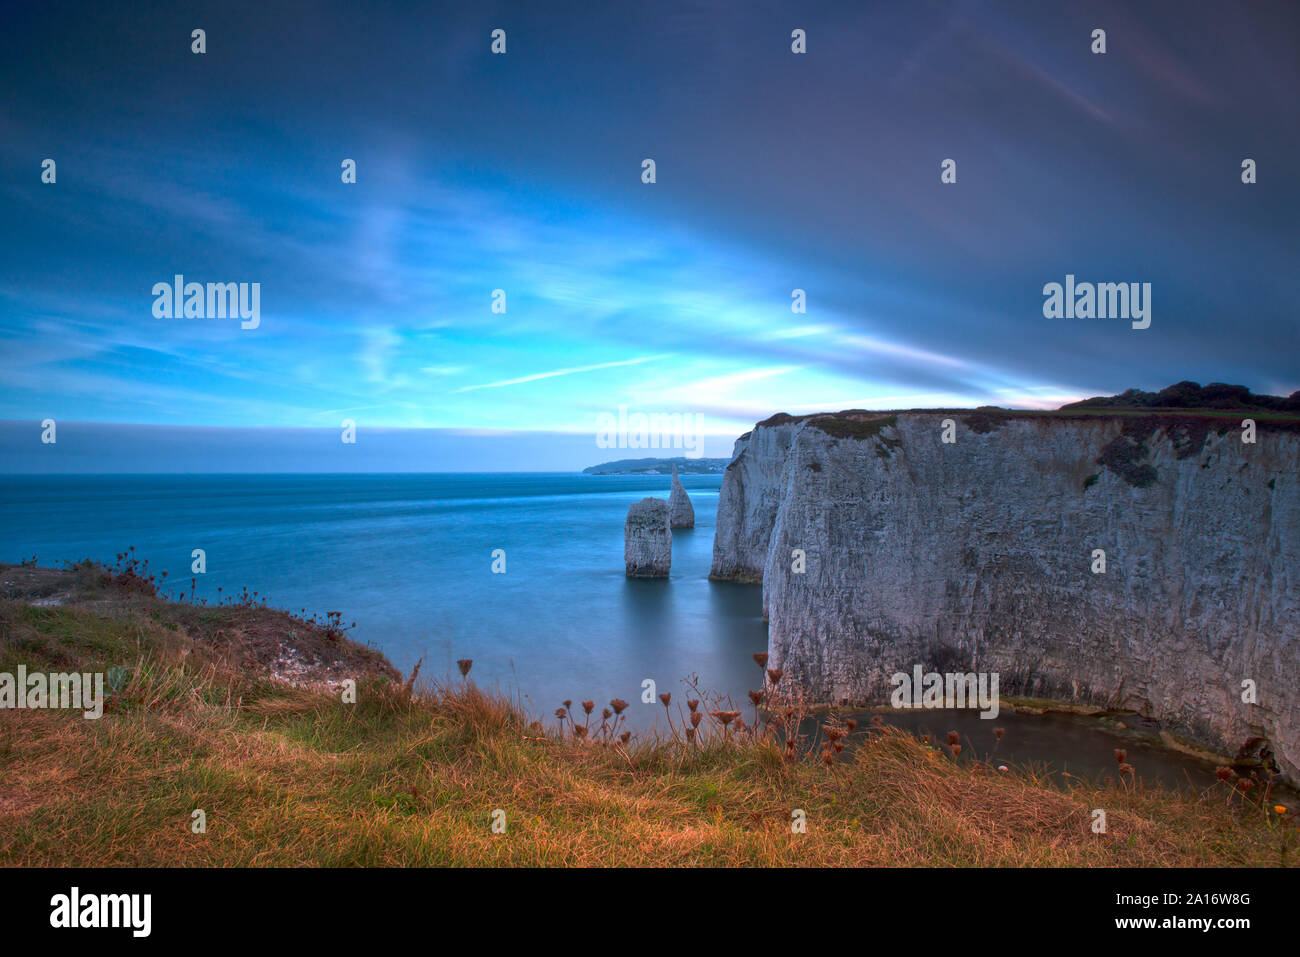 Les Pinnacles, Studland, à l'île de Purbeck, Dorset, Angleterre, Royaume-Uni, Europe. Banque D'Images